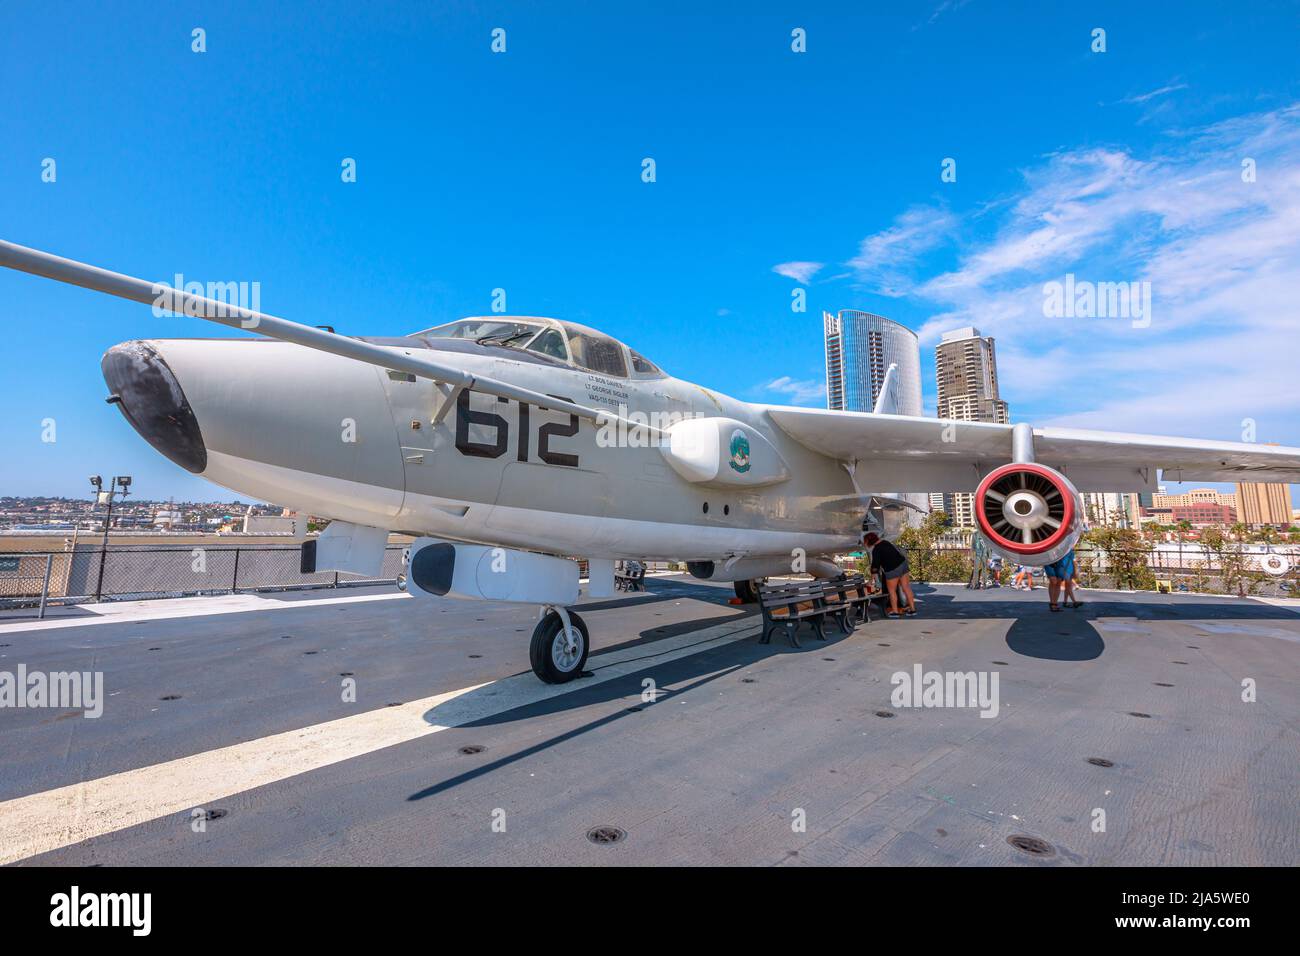 San Diego, California, Stati Uniti d'America - LUGLIO 2018: Bomber supersonico americano a-5 Vigilante del 1960s. USS Midway Battleship Aviation Foto Stock